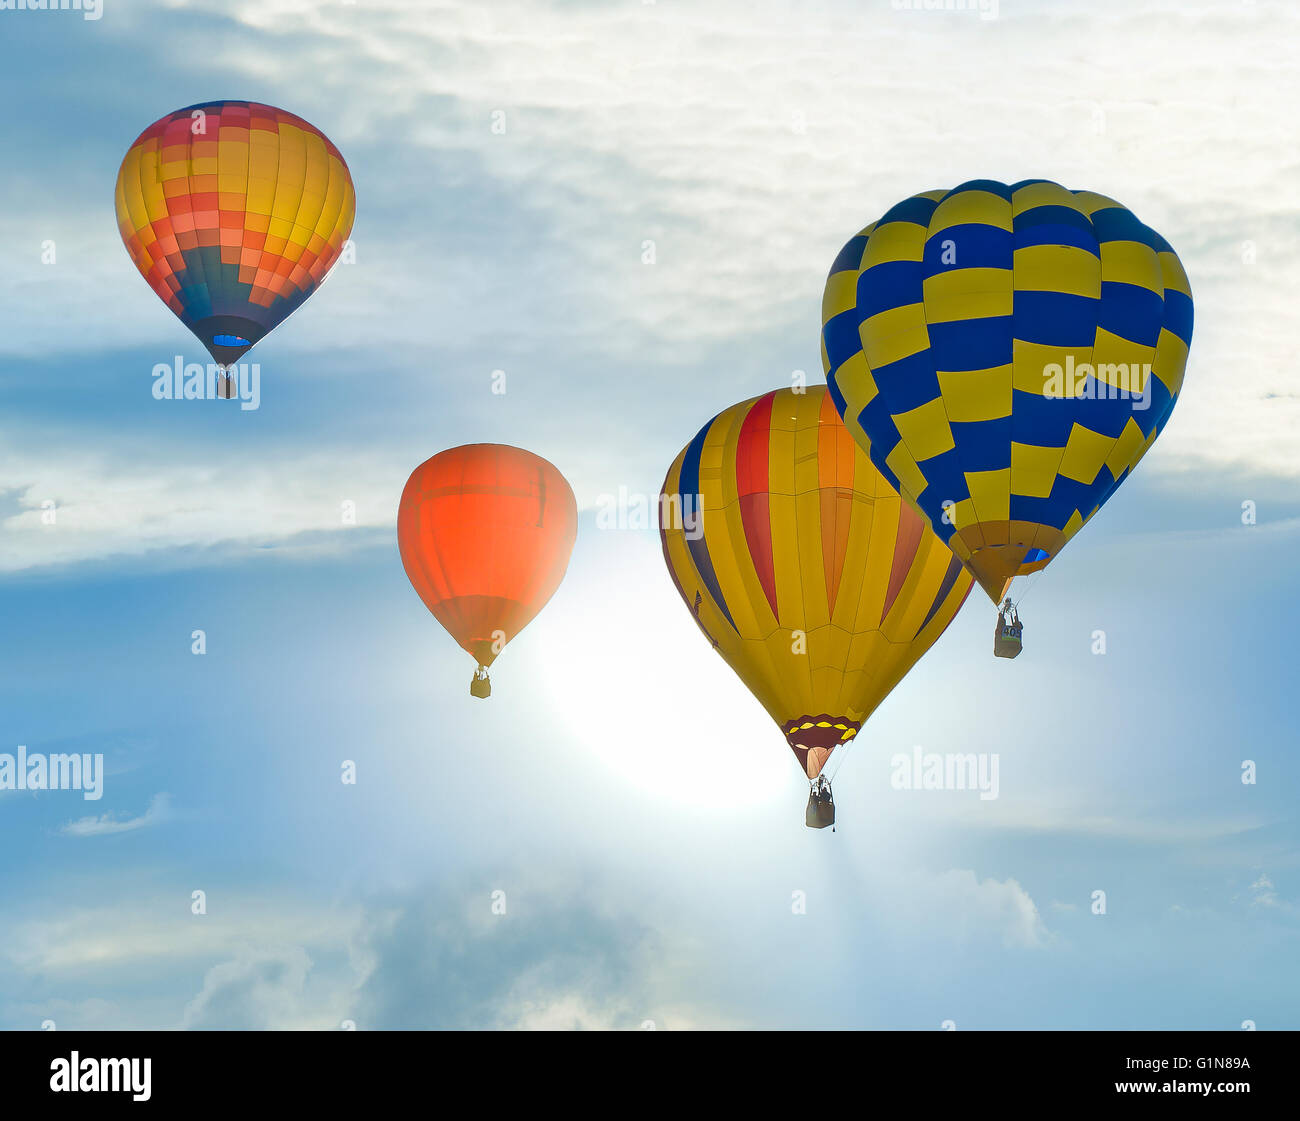 Hot air balloons at Balloon Fiesta in Albuquerque  New Mexico, U.S. Stock Photo